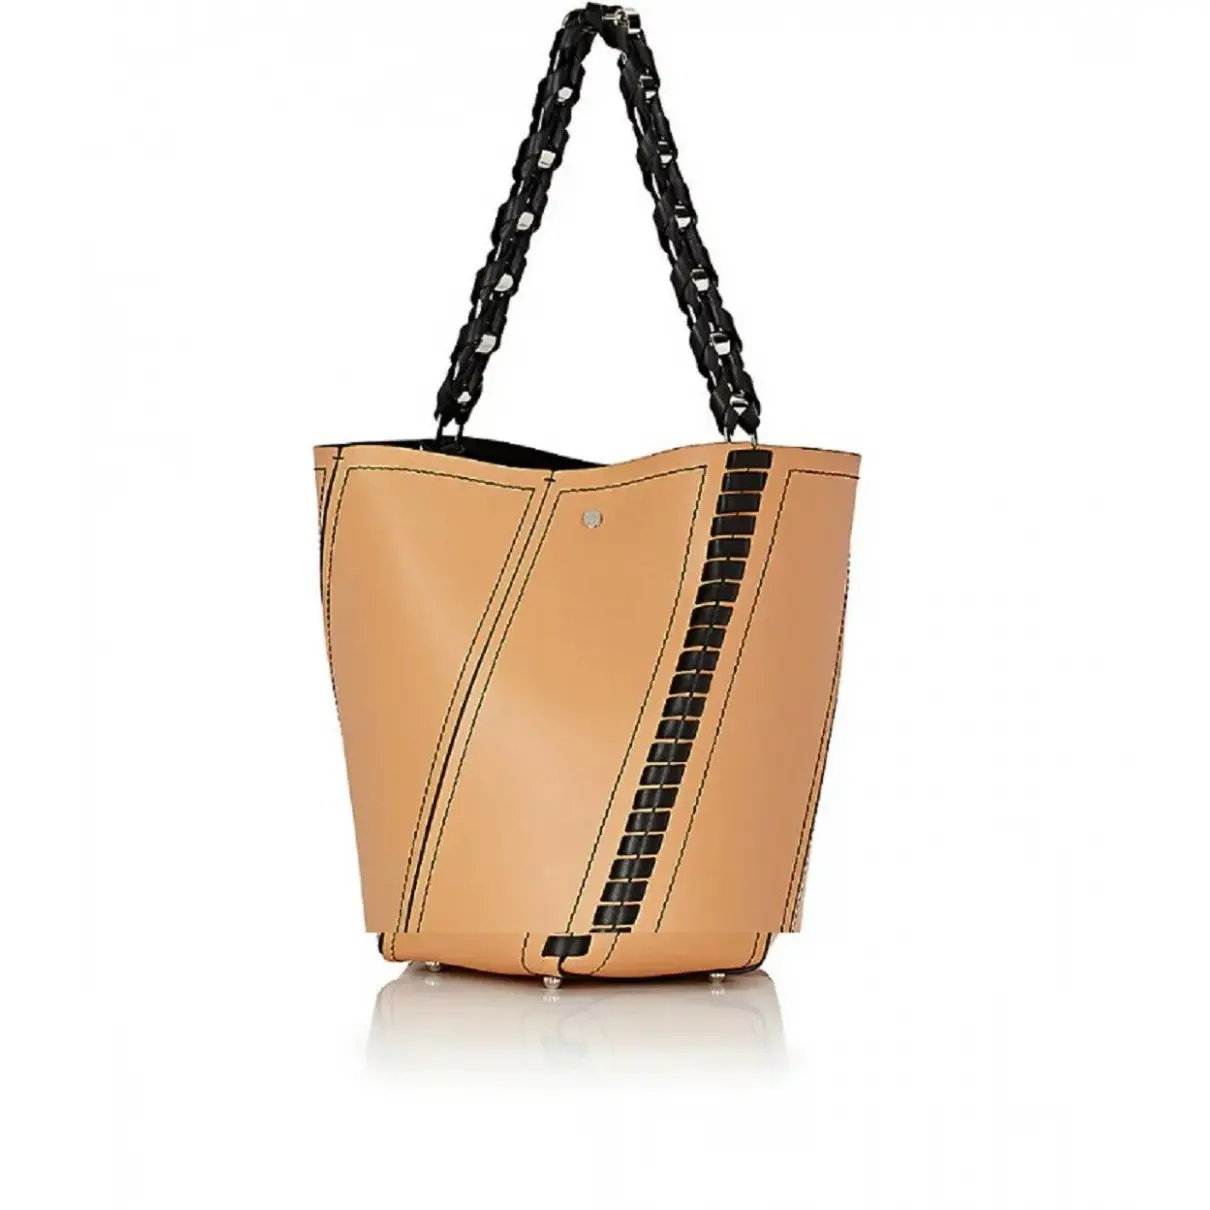 Buy Proenza Schouler Hex leather handbag online